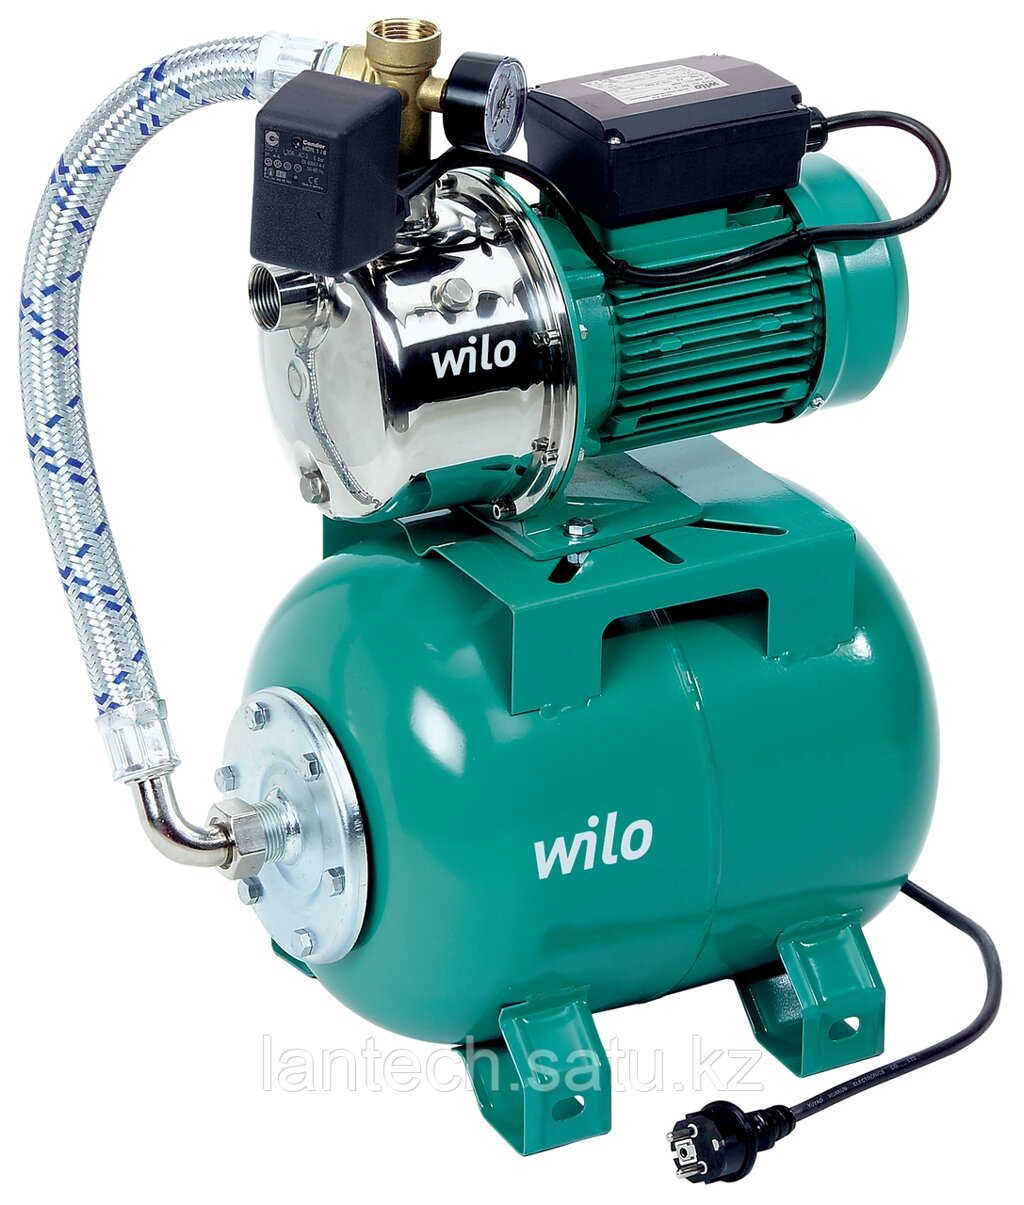 Автоматическая насосная станция WILO HiMulti 3 H 50/2-44 P - опт